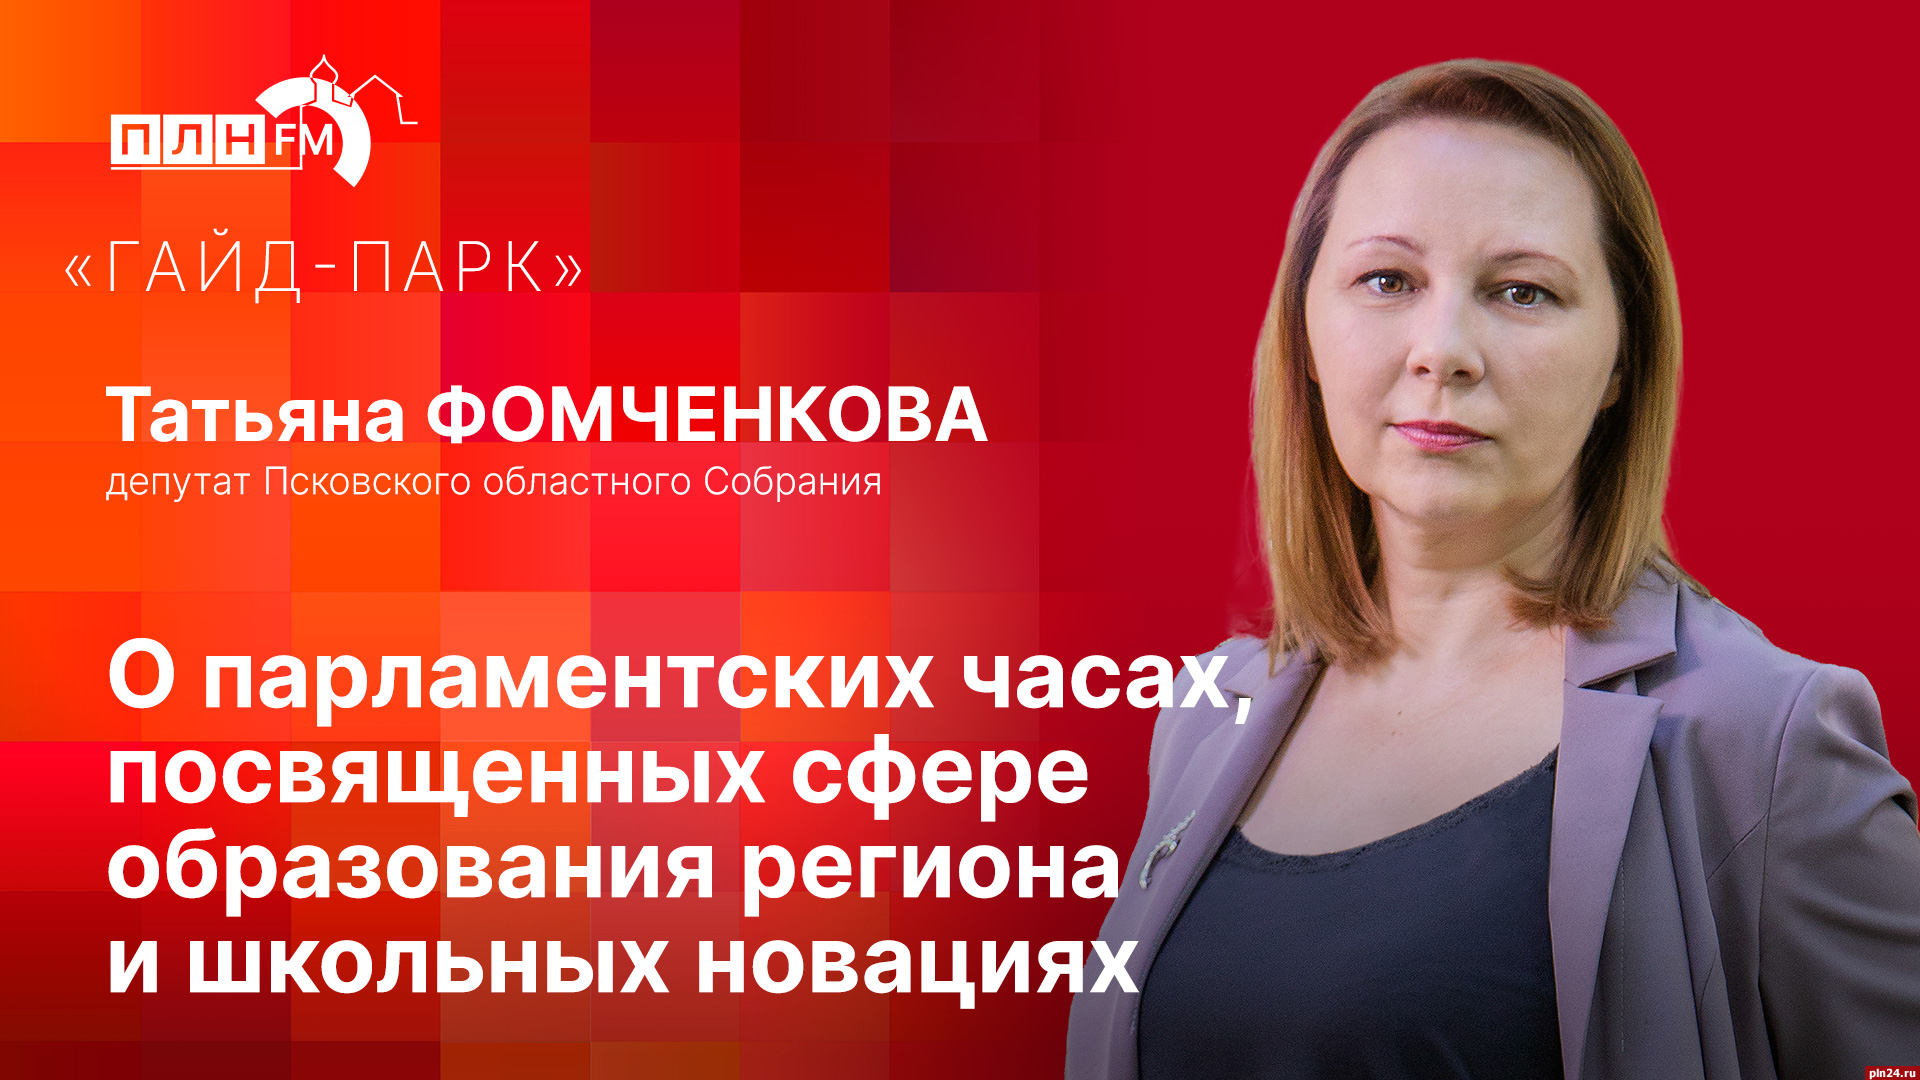 Начинается видеотрансляция программы «Гайд-парк» с депутатом Татьяной Фомченковой